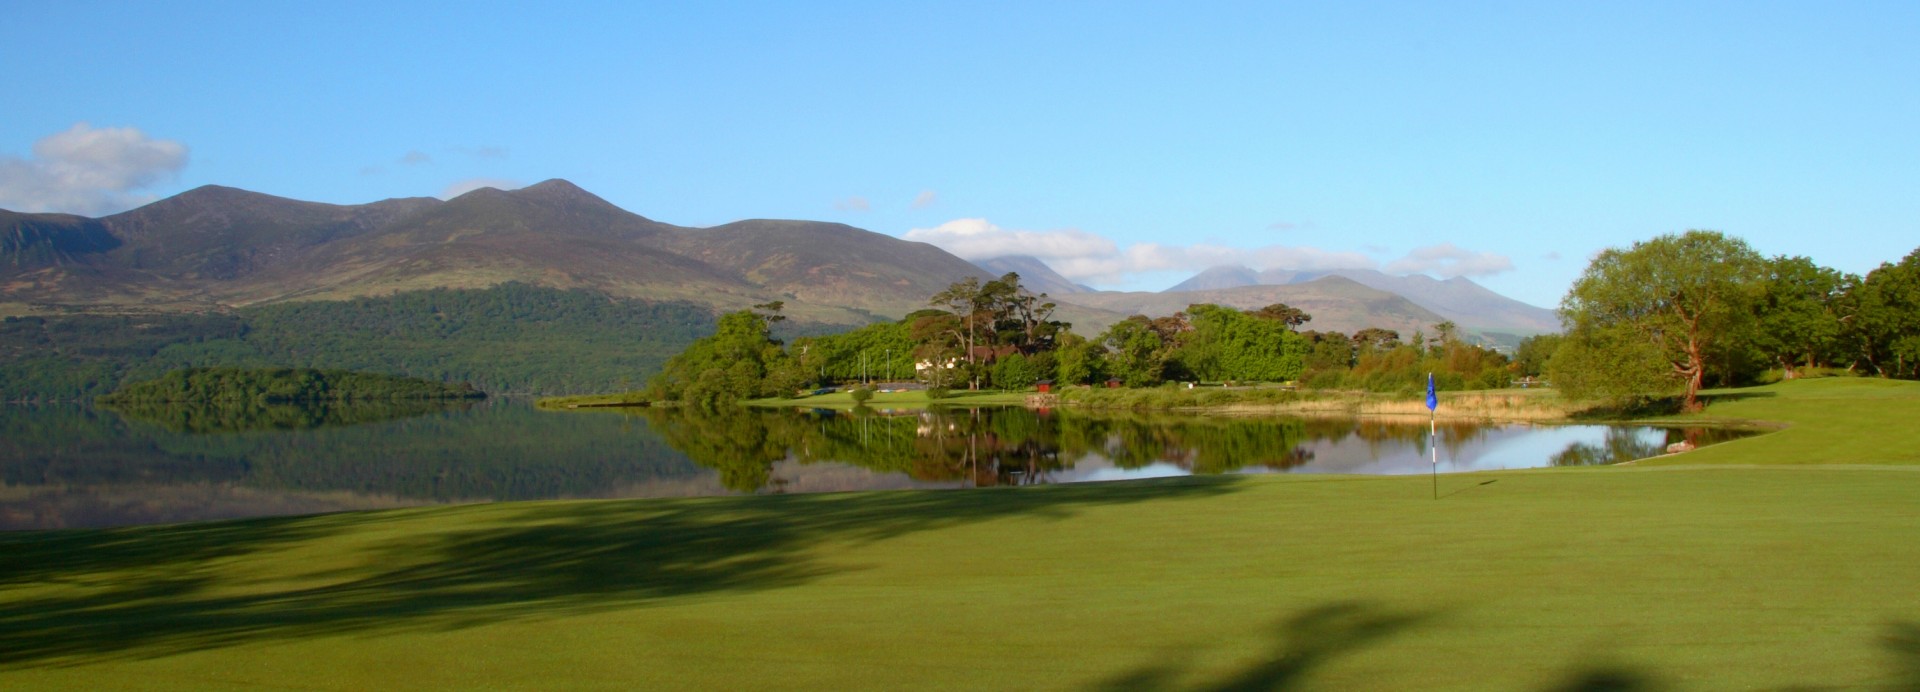 Killarney Golf Club - Killeen Course  | Golfové zájezdy, golfová dovolená, luxusní golf